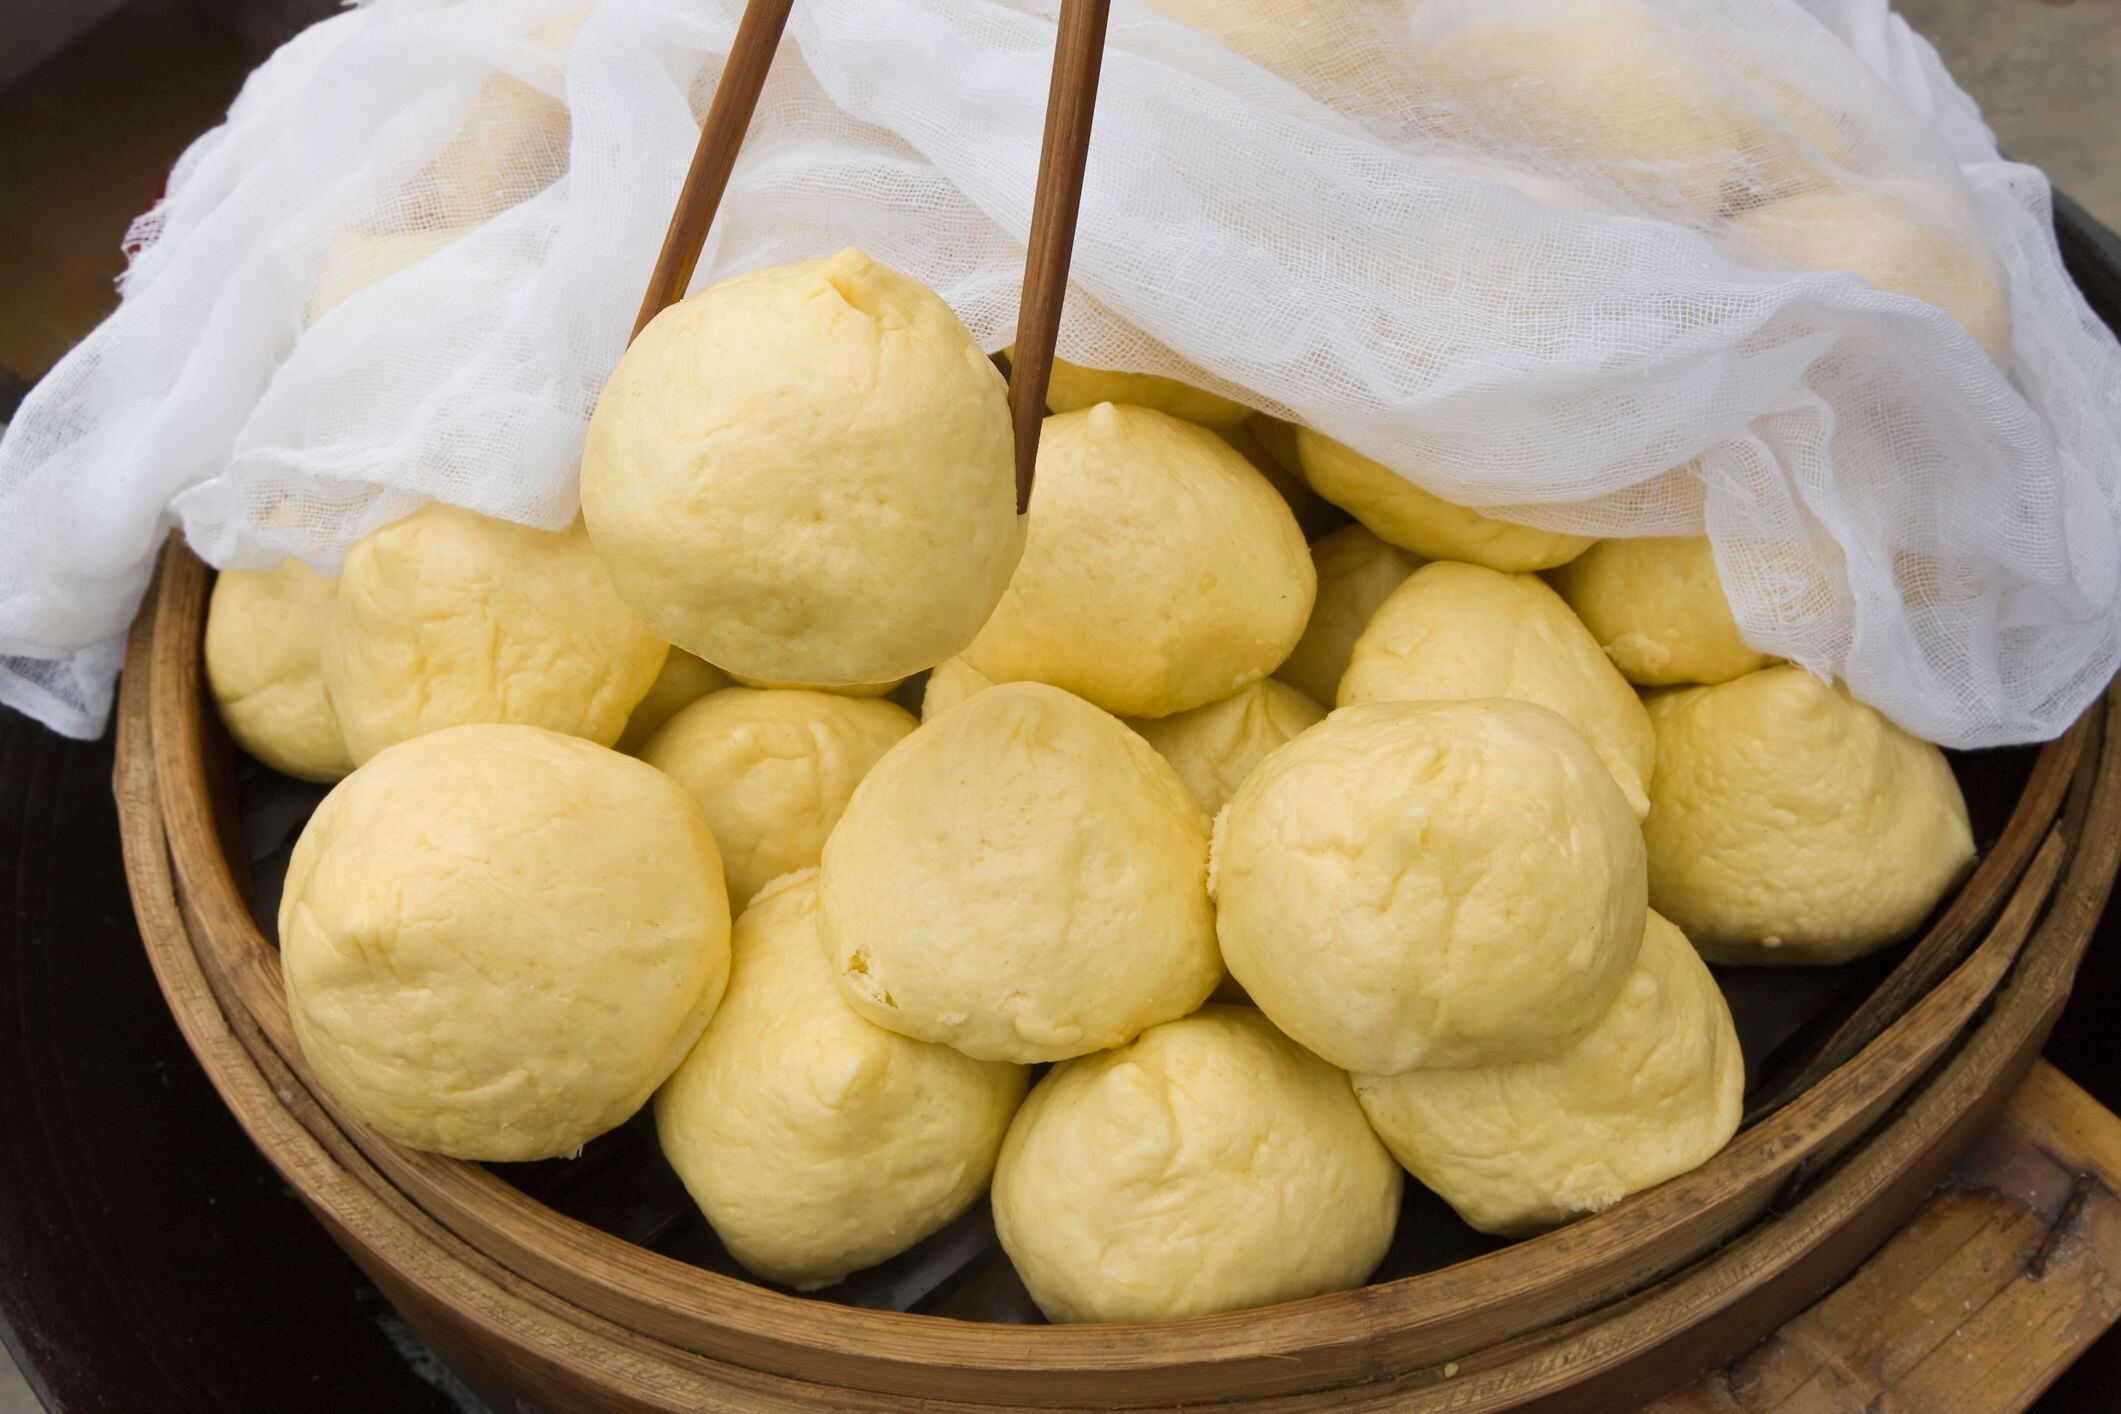 Explore el mundo de los sabores asiáticos desde la comodidad de su hogar con nuestra receta detallada para preparar bao al vapor.